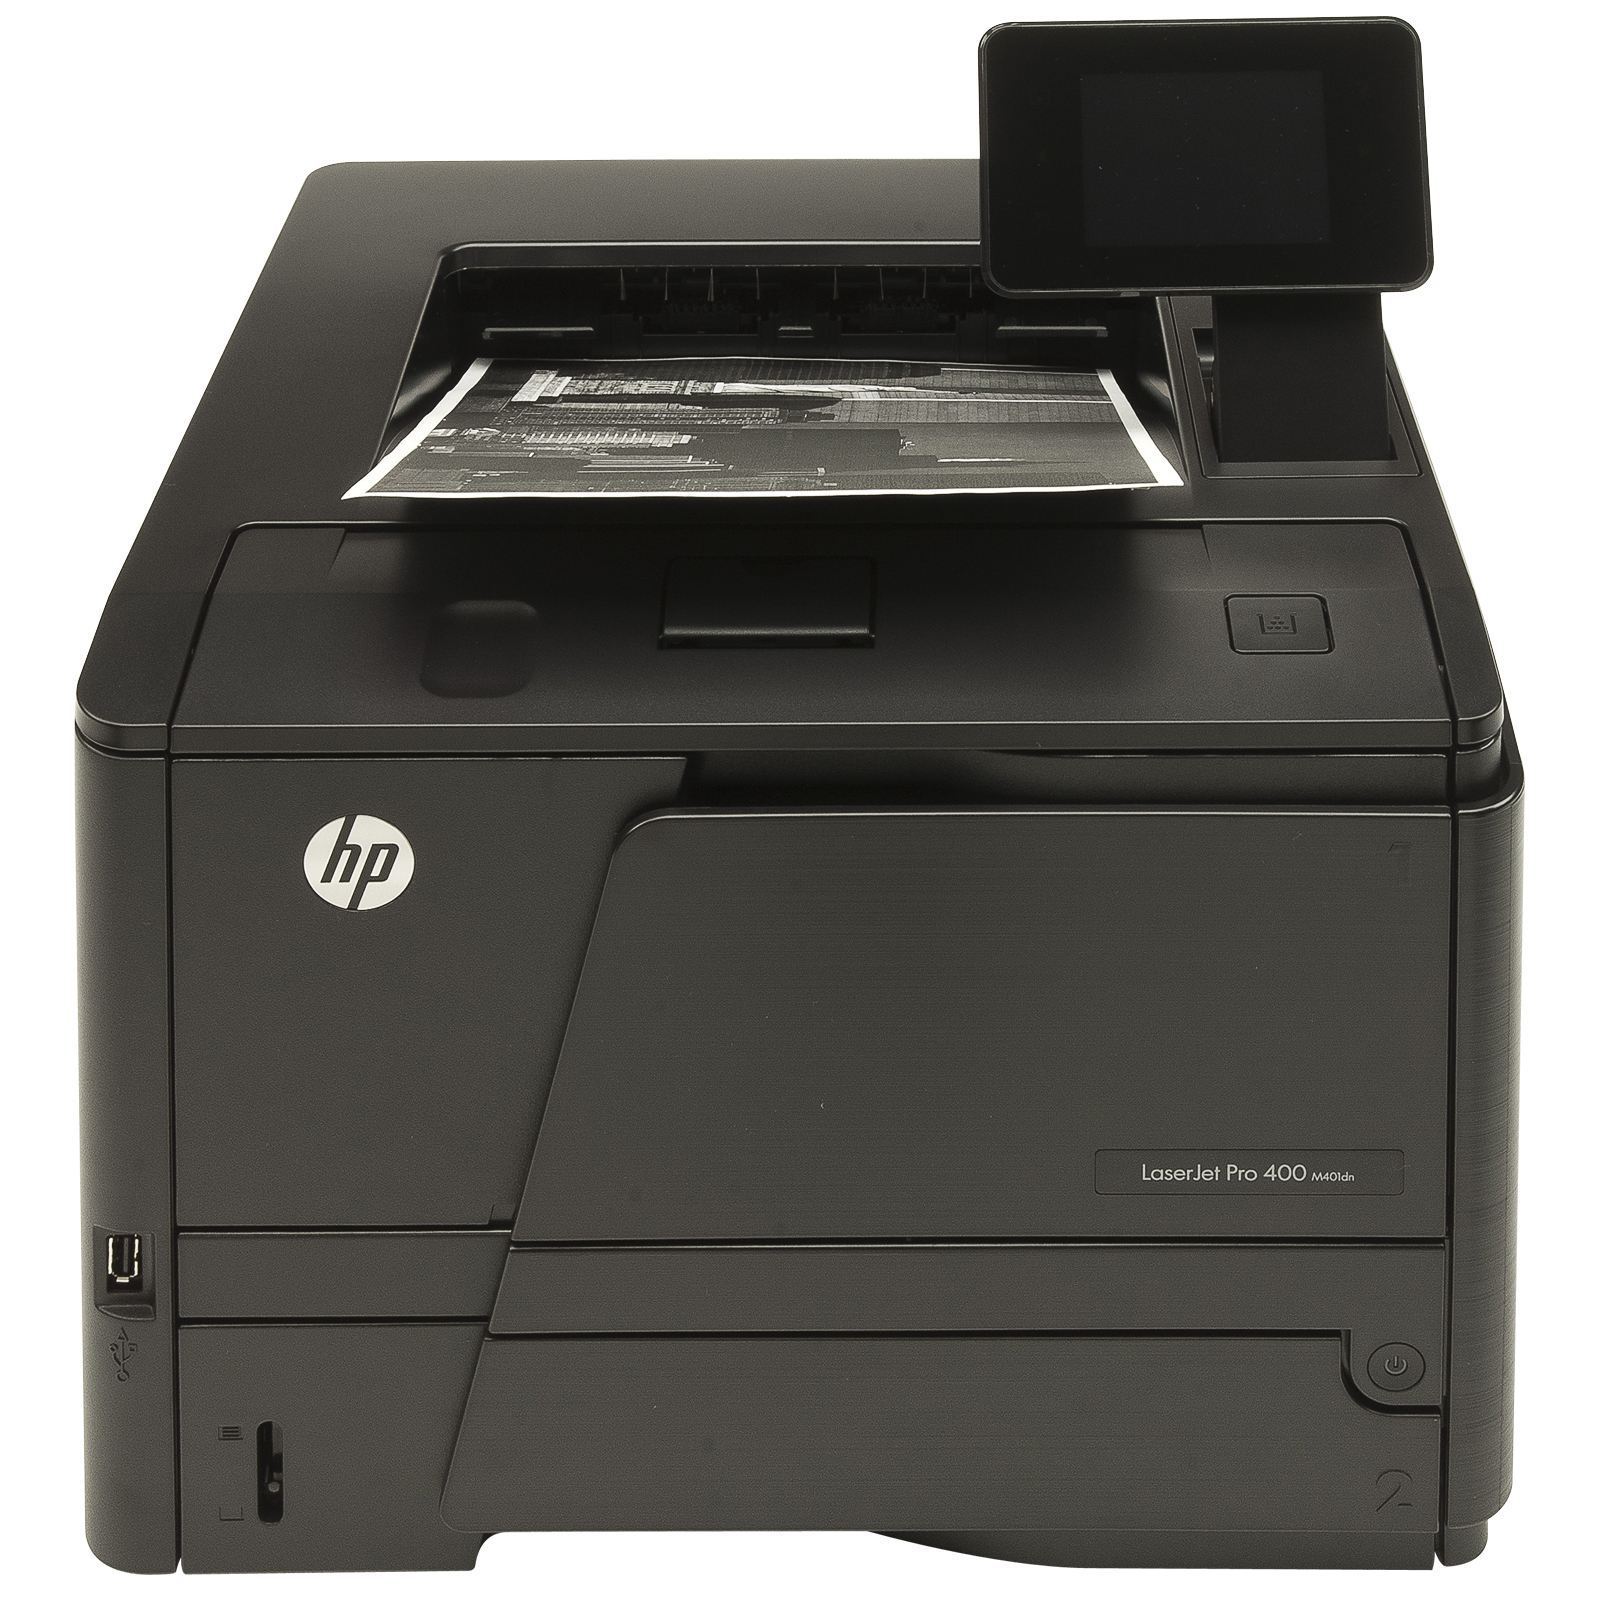 HP LaserJet Pro 400 Printer M401dn